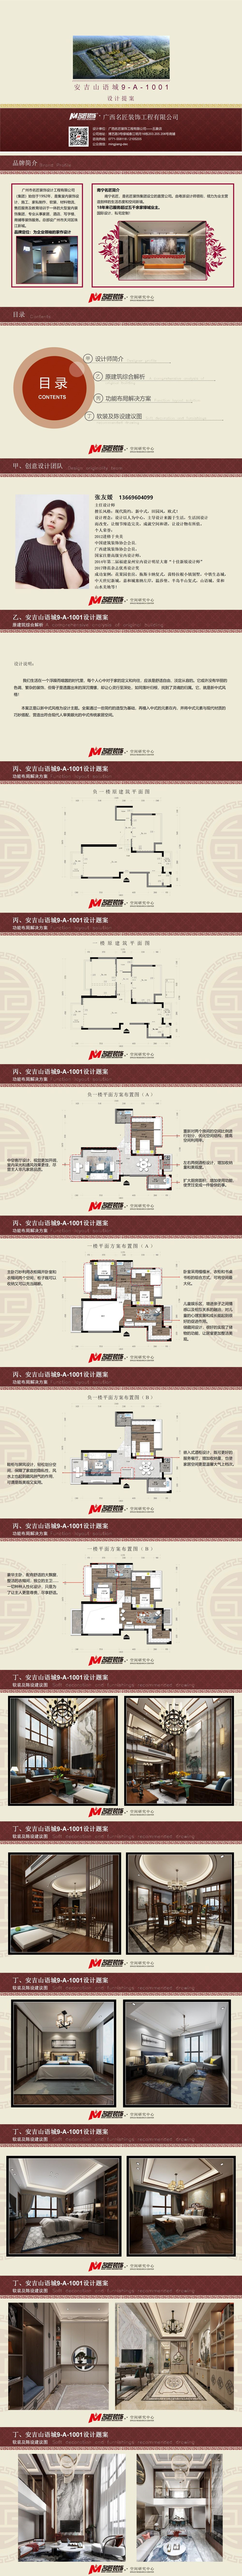 安吉山语城301㎡户型新中式装修风格设计方案解析